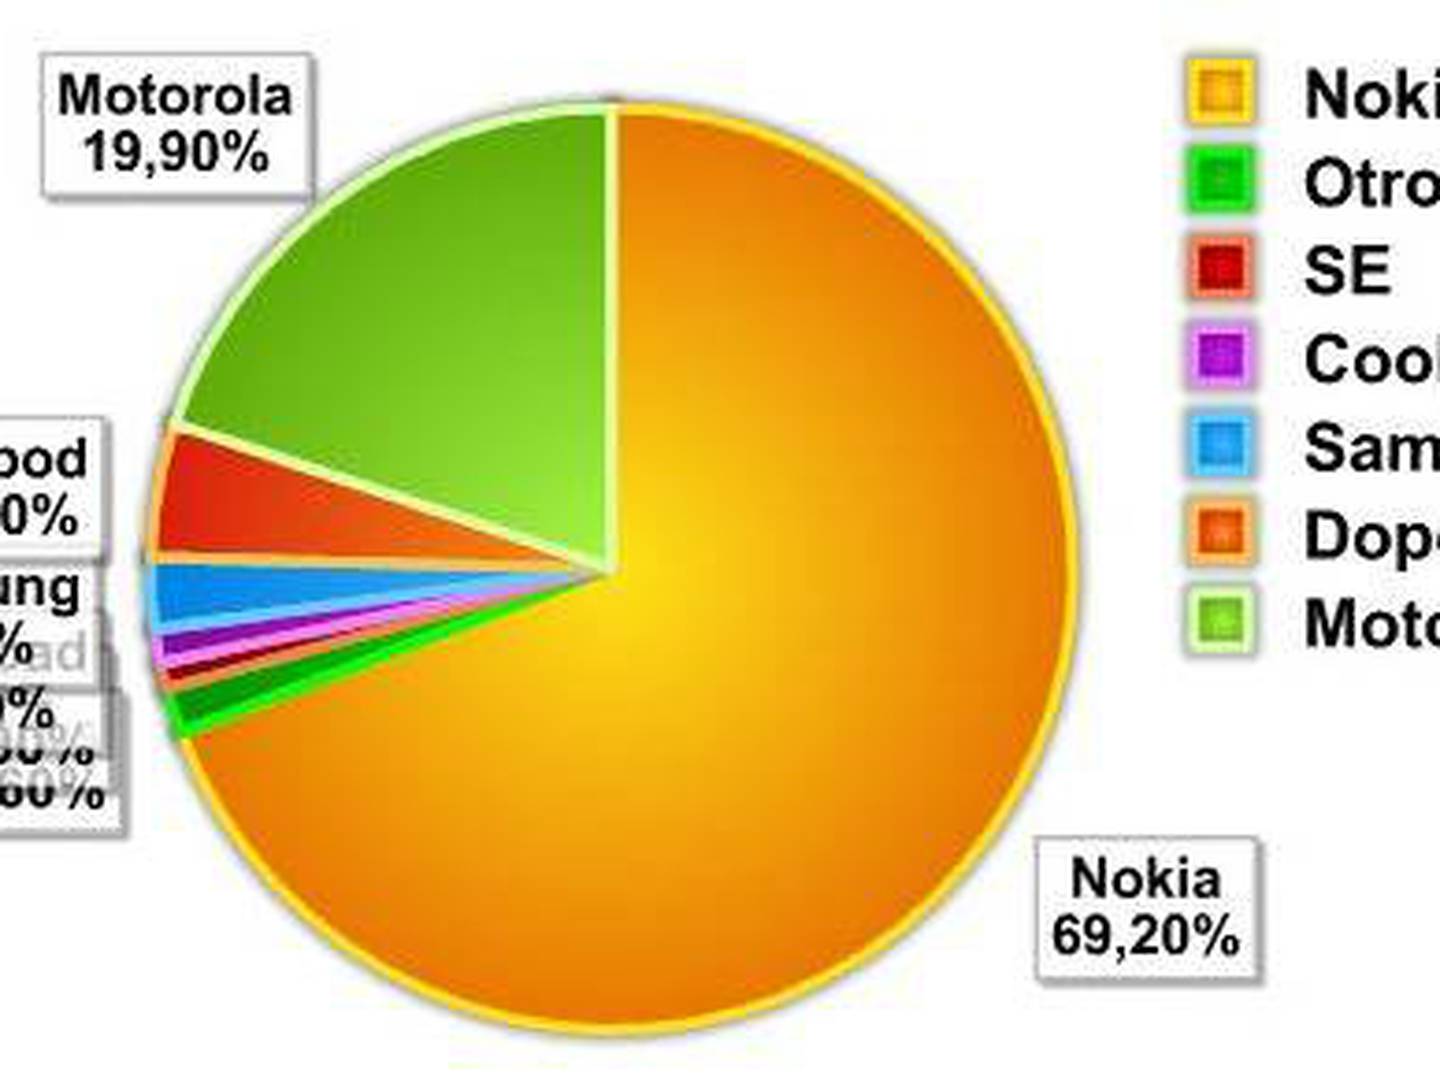 plan de estudios Monetario vena Nokia y Motorola: El oligopolio de smartphones Chinos – FayerWayer